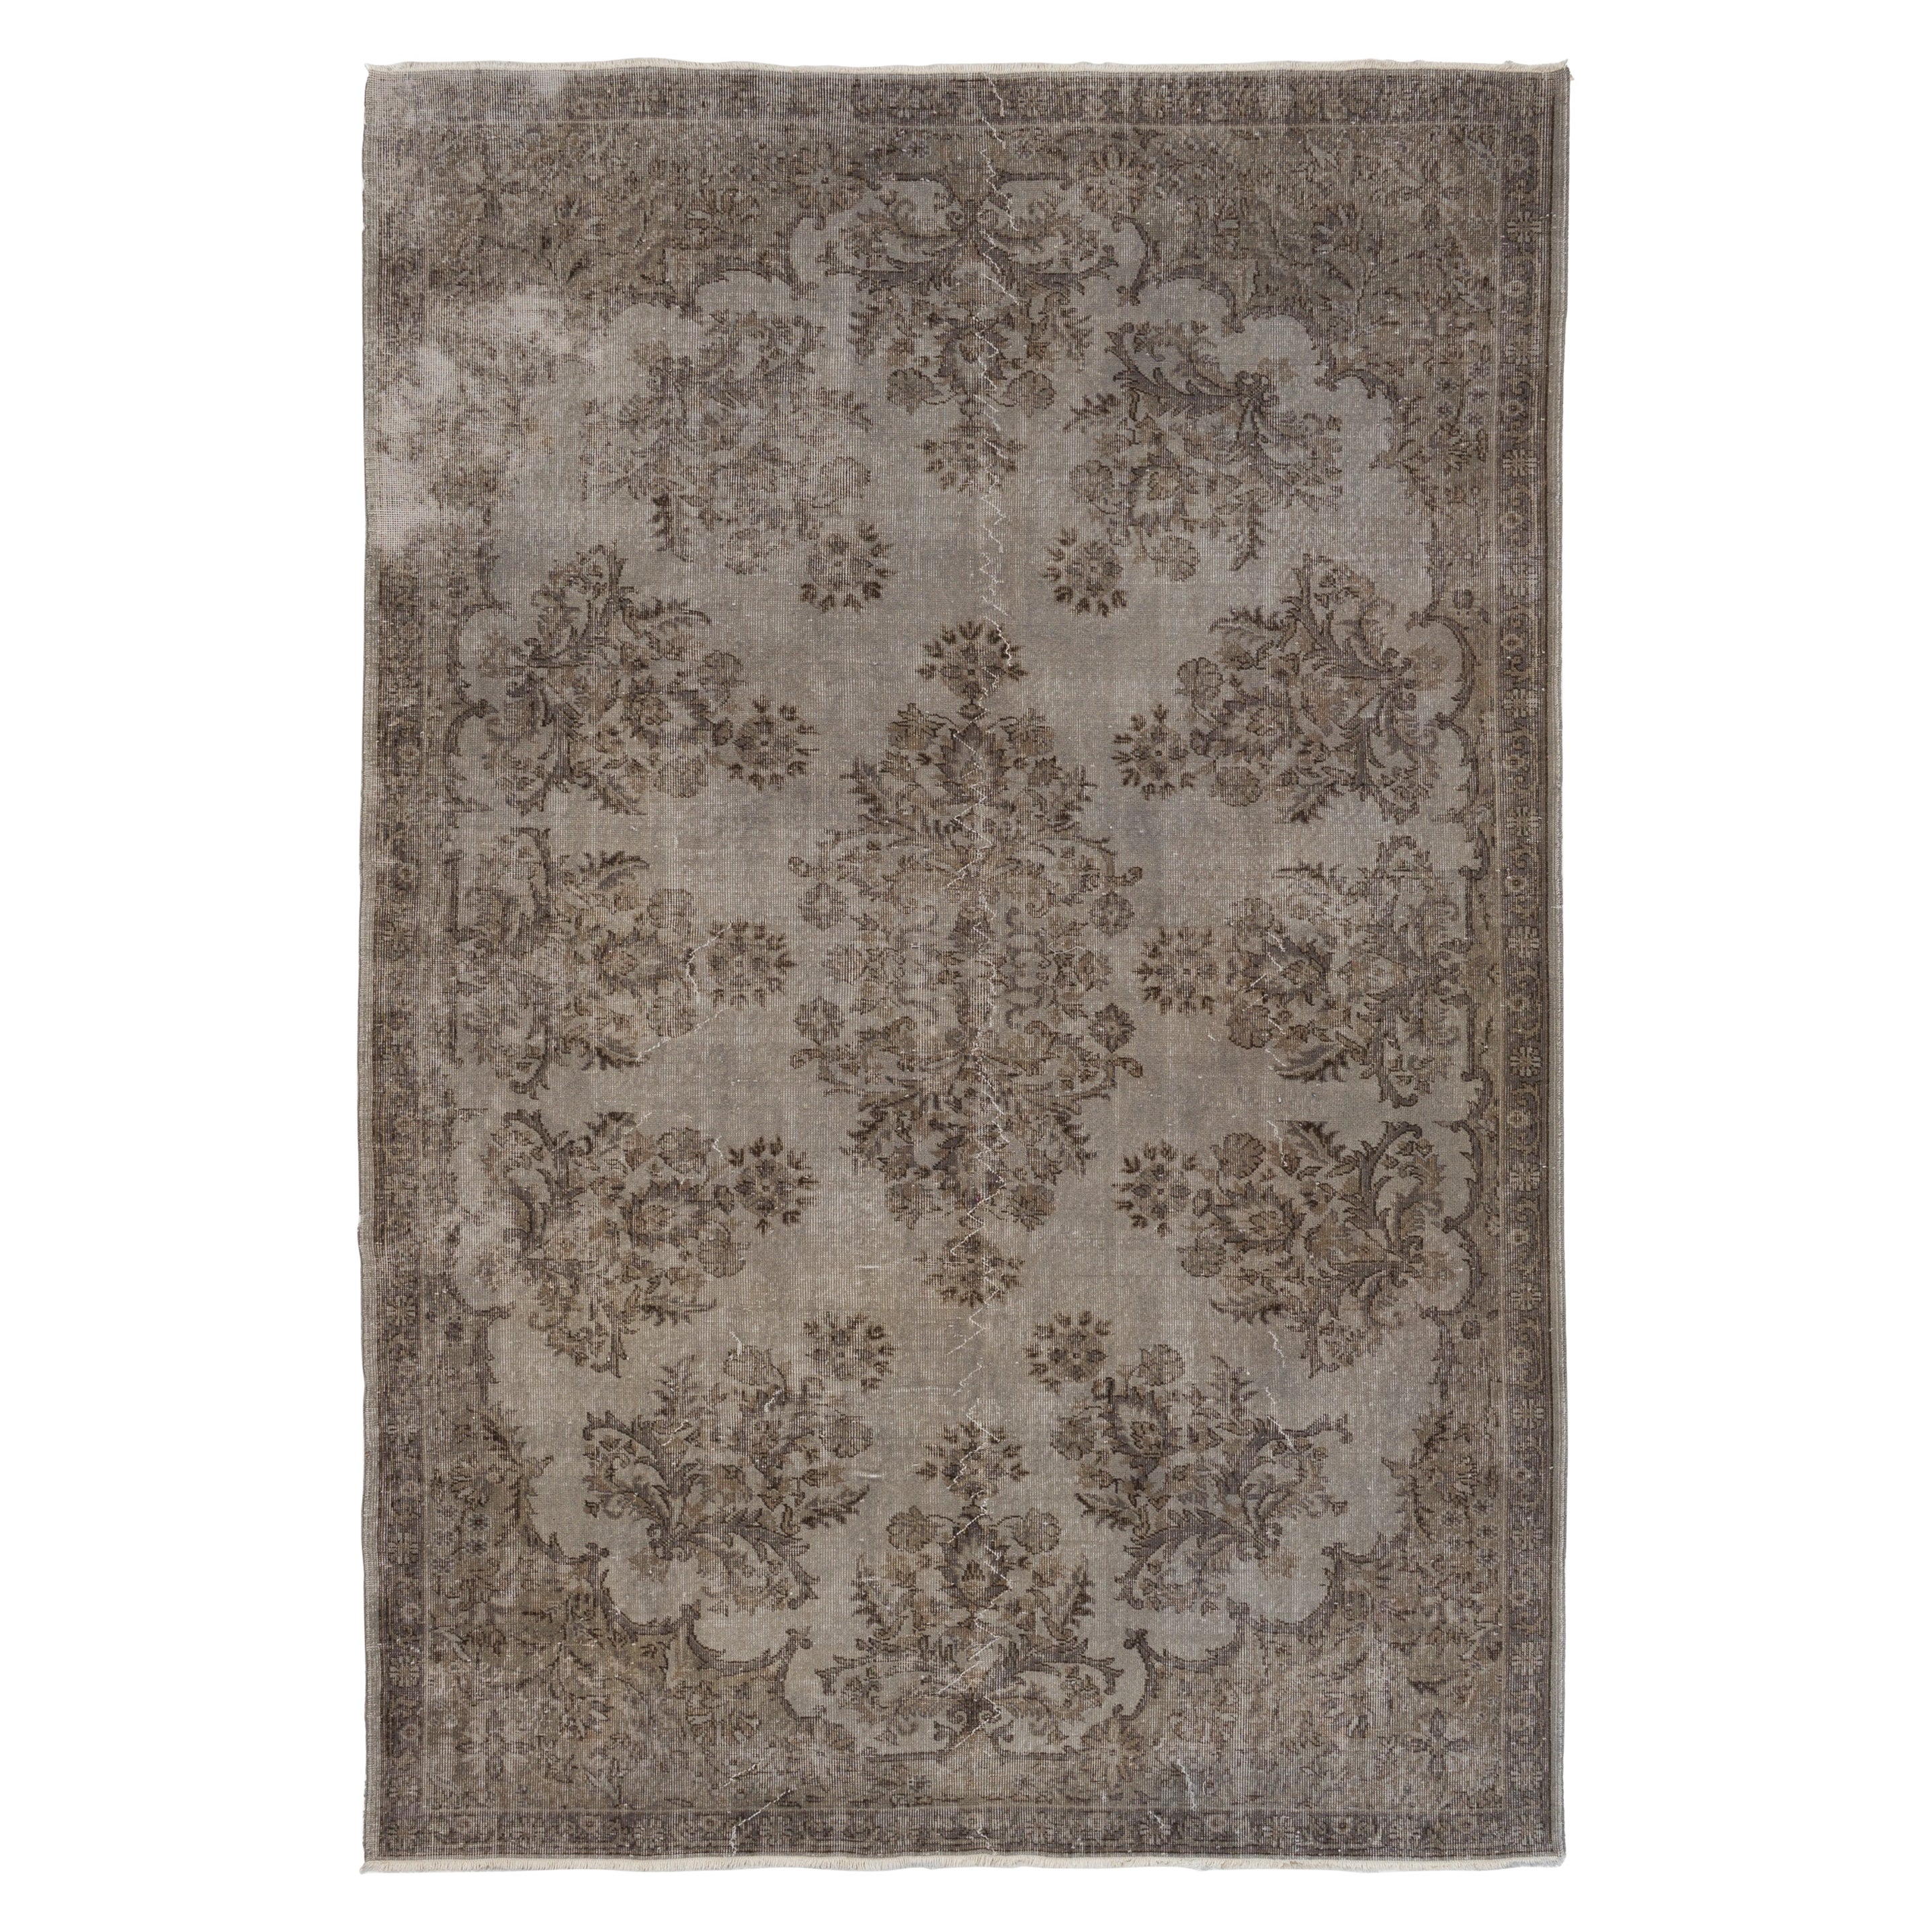 7.2x10.5 Ft Handmade Floral Garden Design Large Rug. Gray Vintage  Carpet